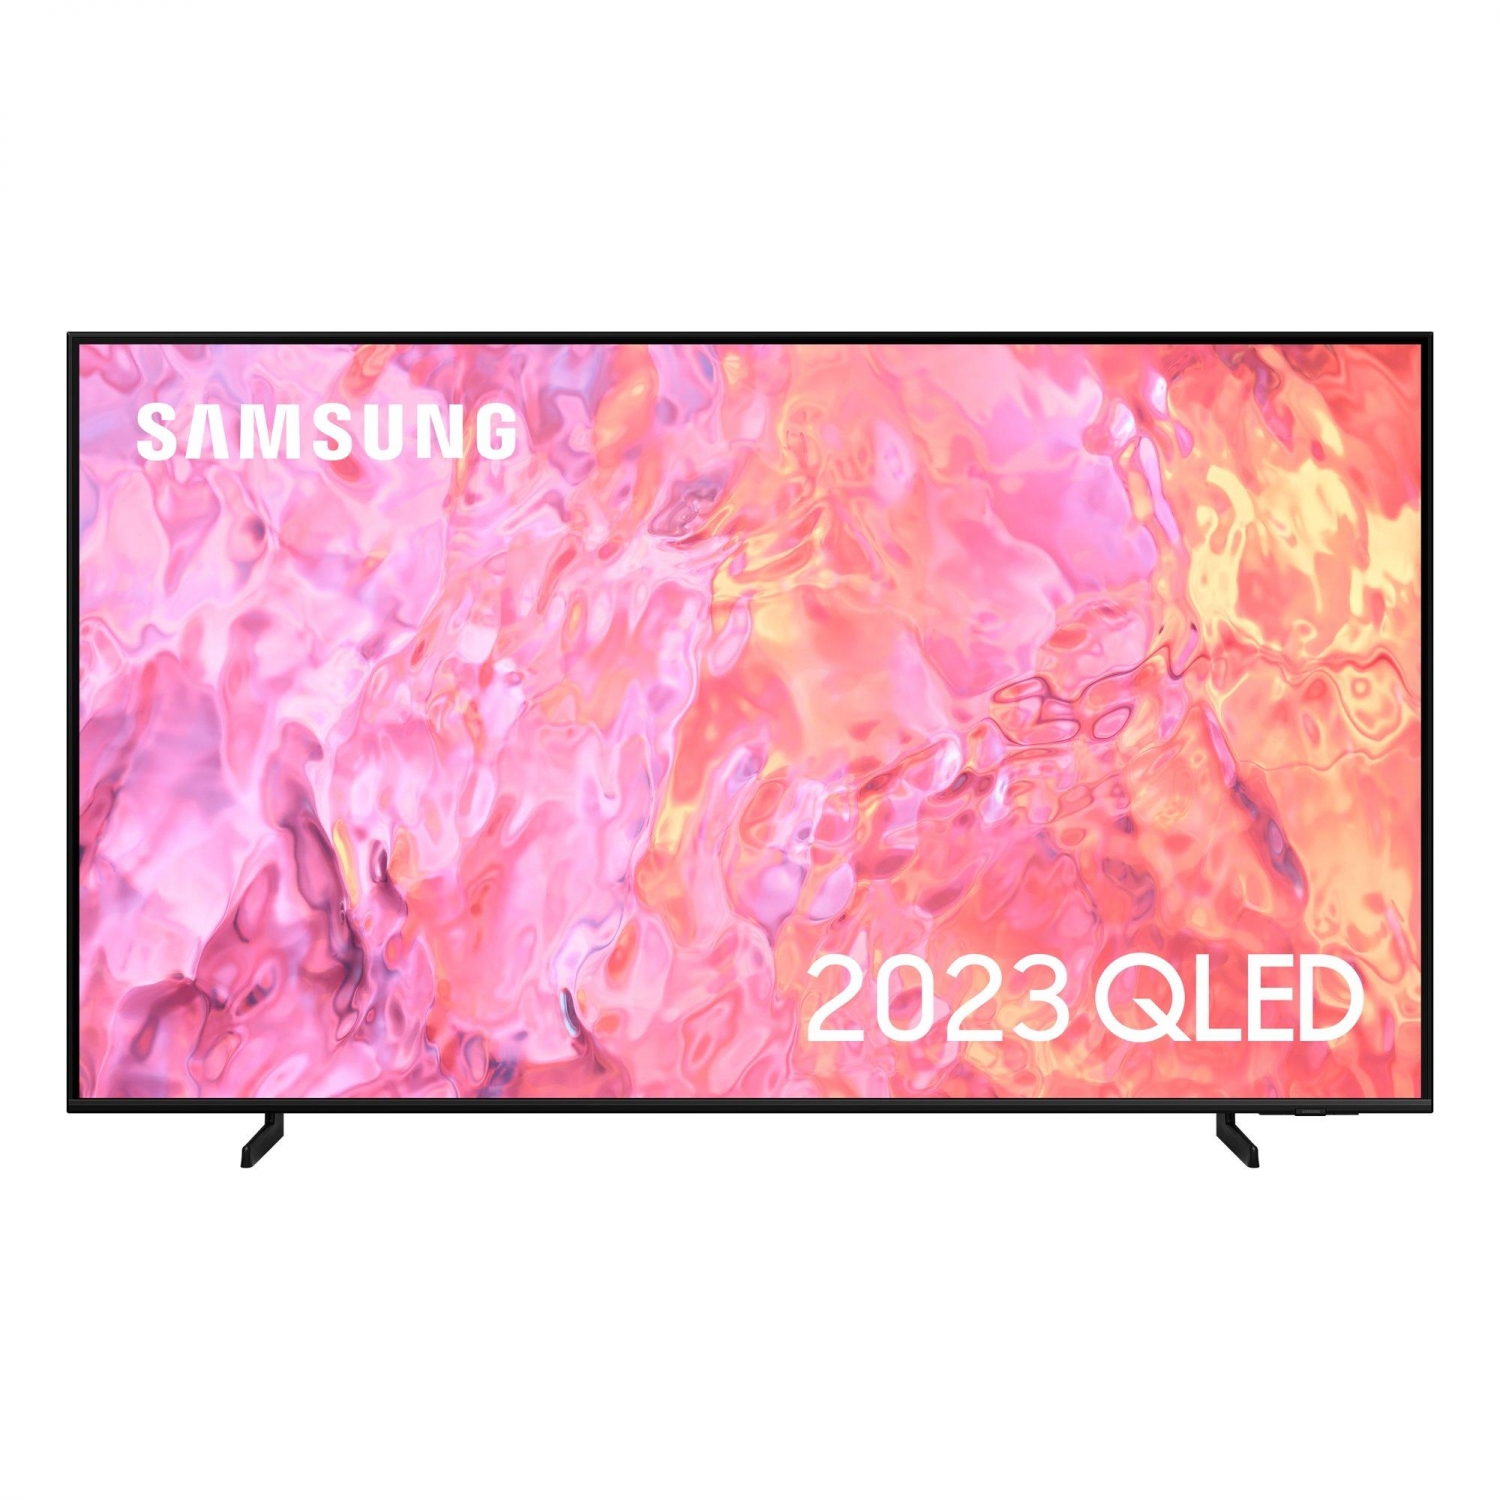 Samsung QE43Q60CAUXXU QLED 4K HD TV - 0